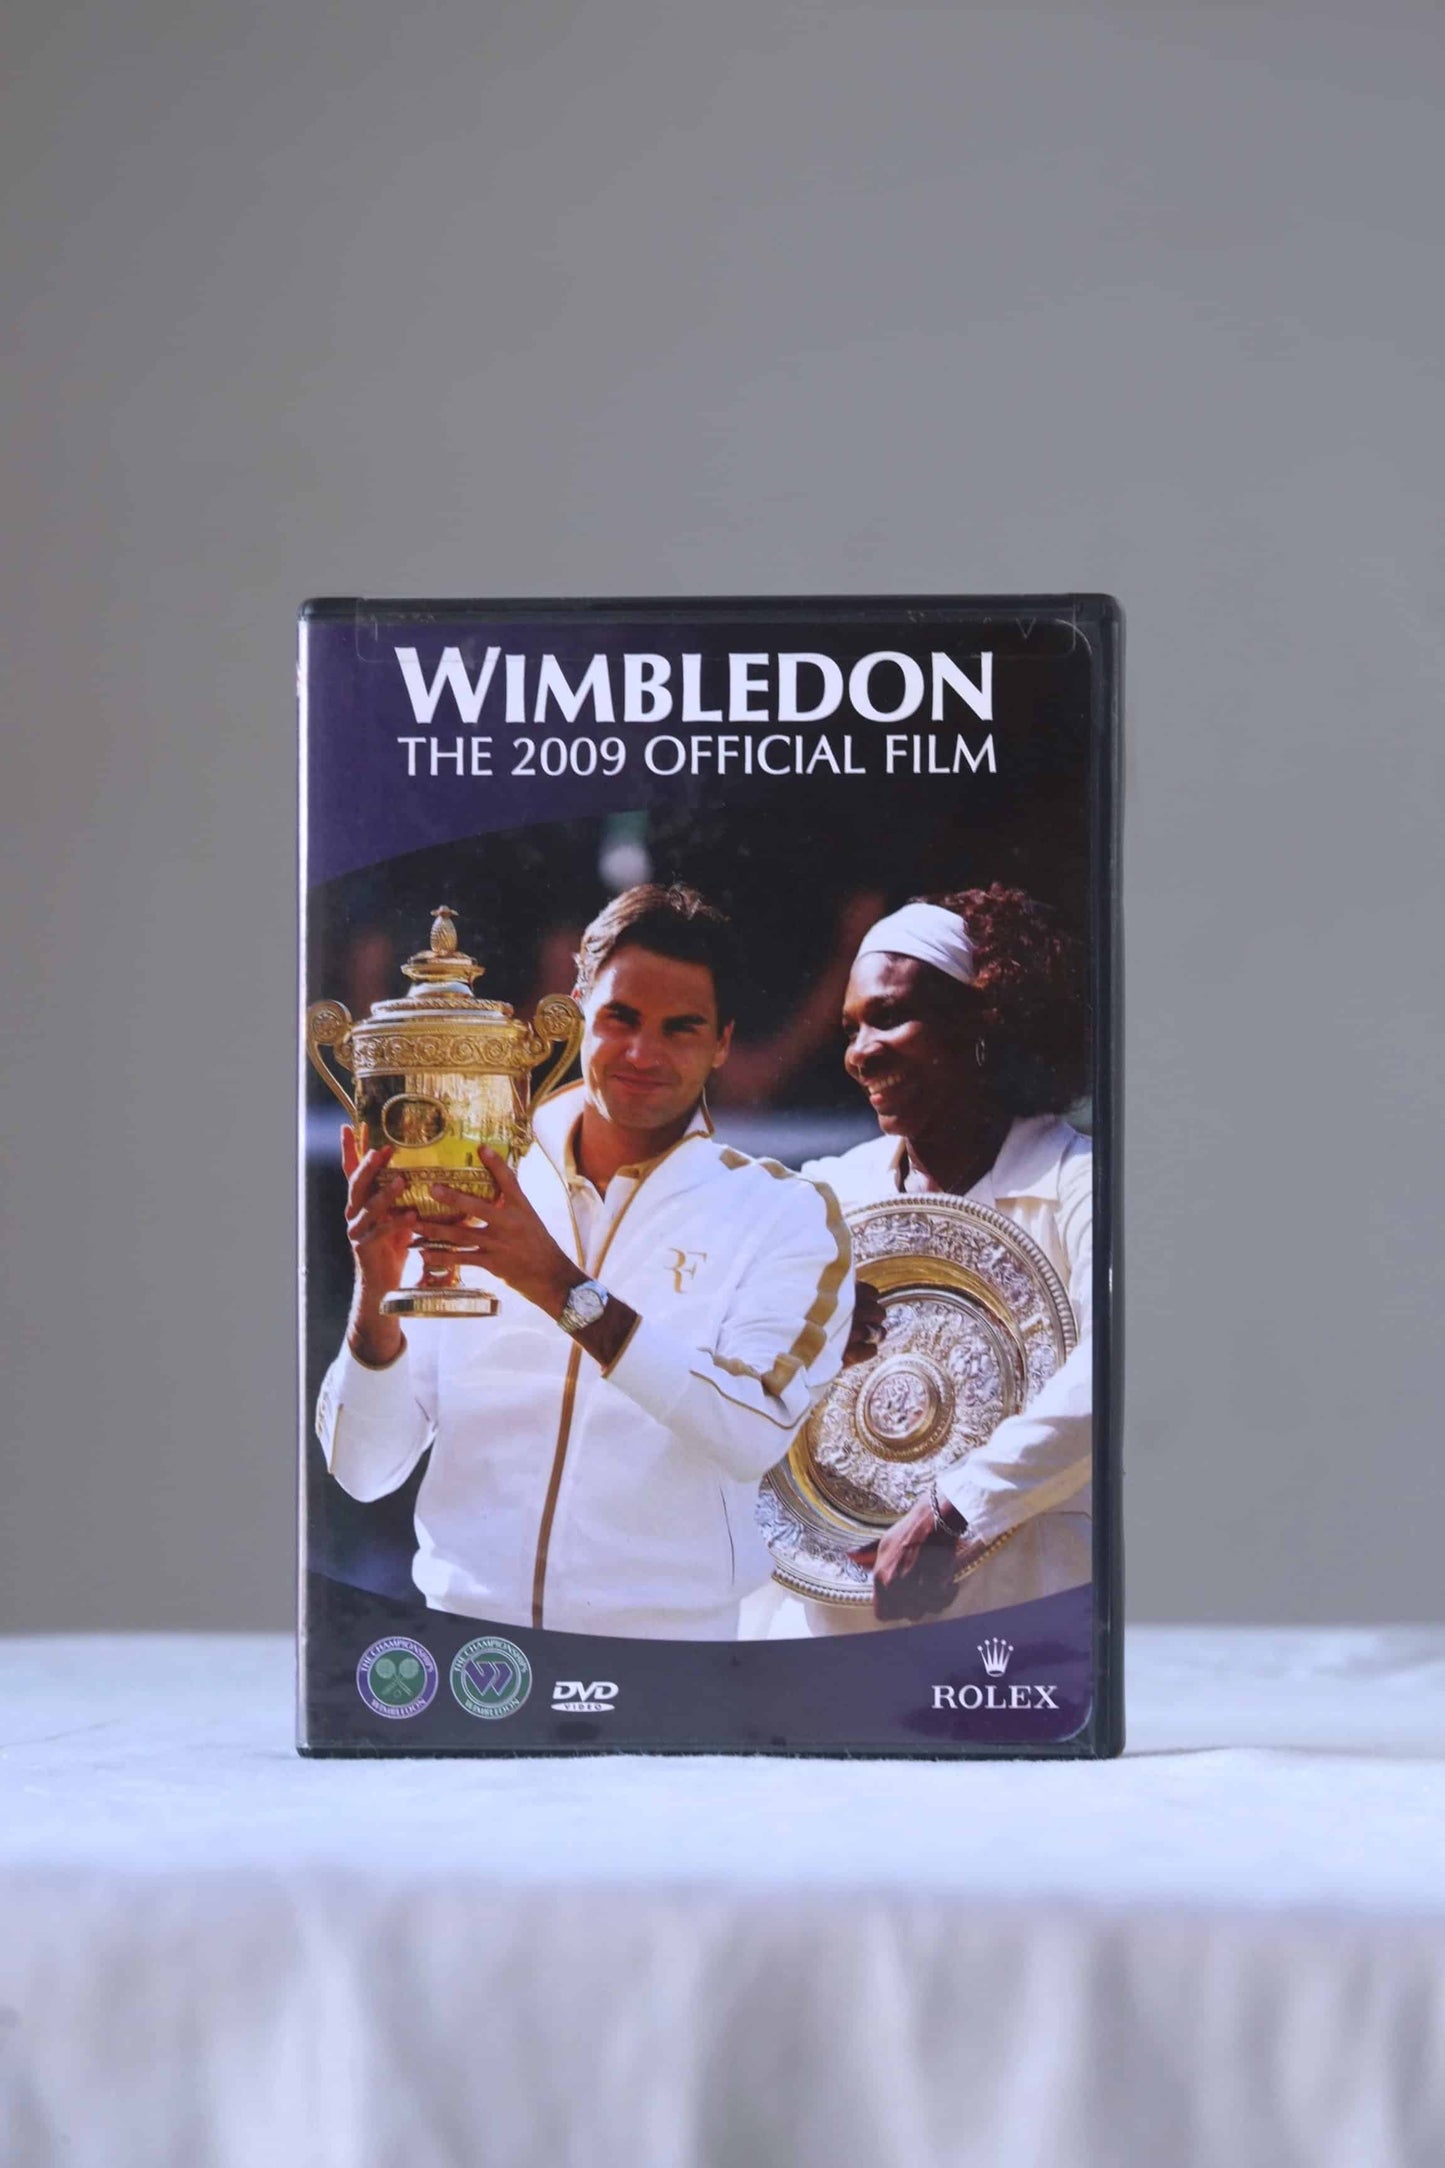 WIMBLEDON The 2009 Official Film DVD